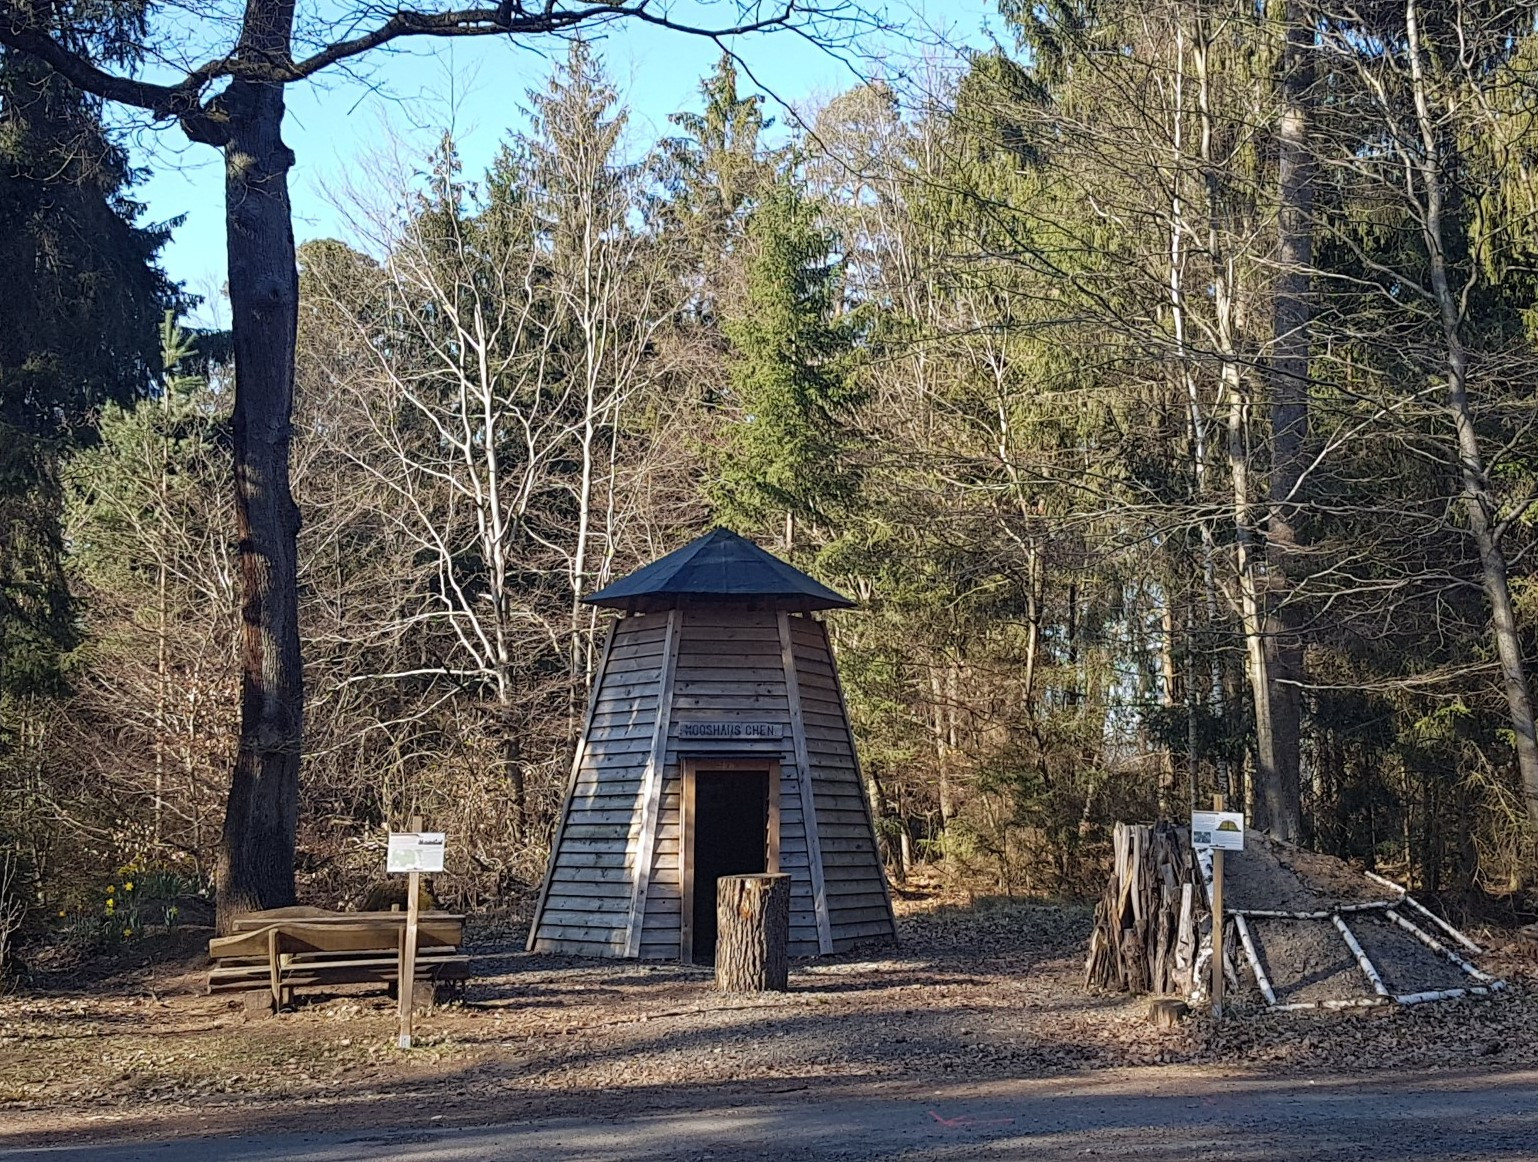 Mooshäuschen - eine einladende Schutzhütte mit Rastplatz und einem Nachbau eines Kohlemeilers